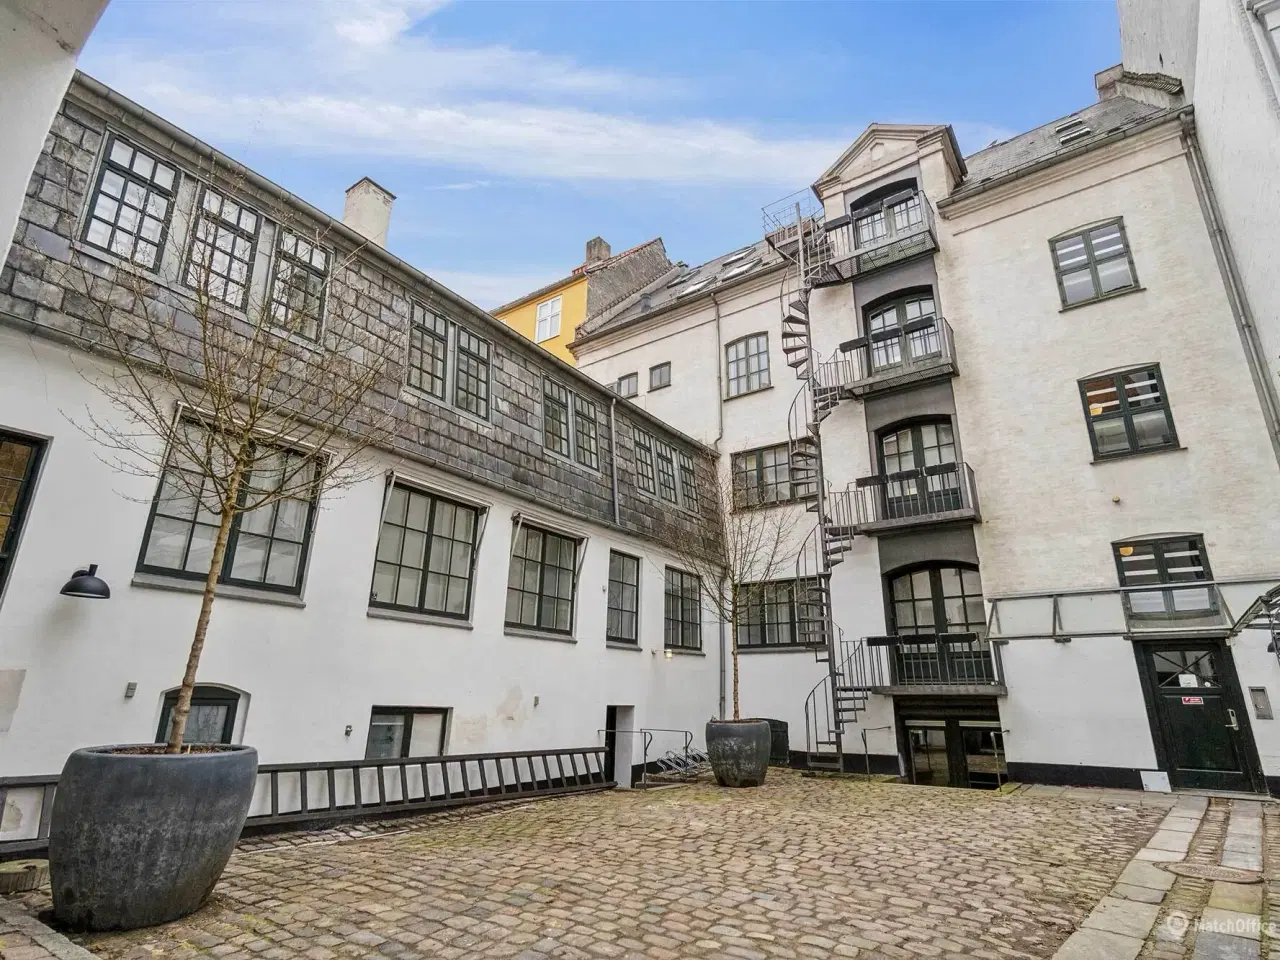 Billede 7 - Eksponeret pakhus med Street Art museum i stuen og 1. sal. Centralt beliggende ved Nyhavn og Ofelia plads.